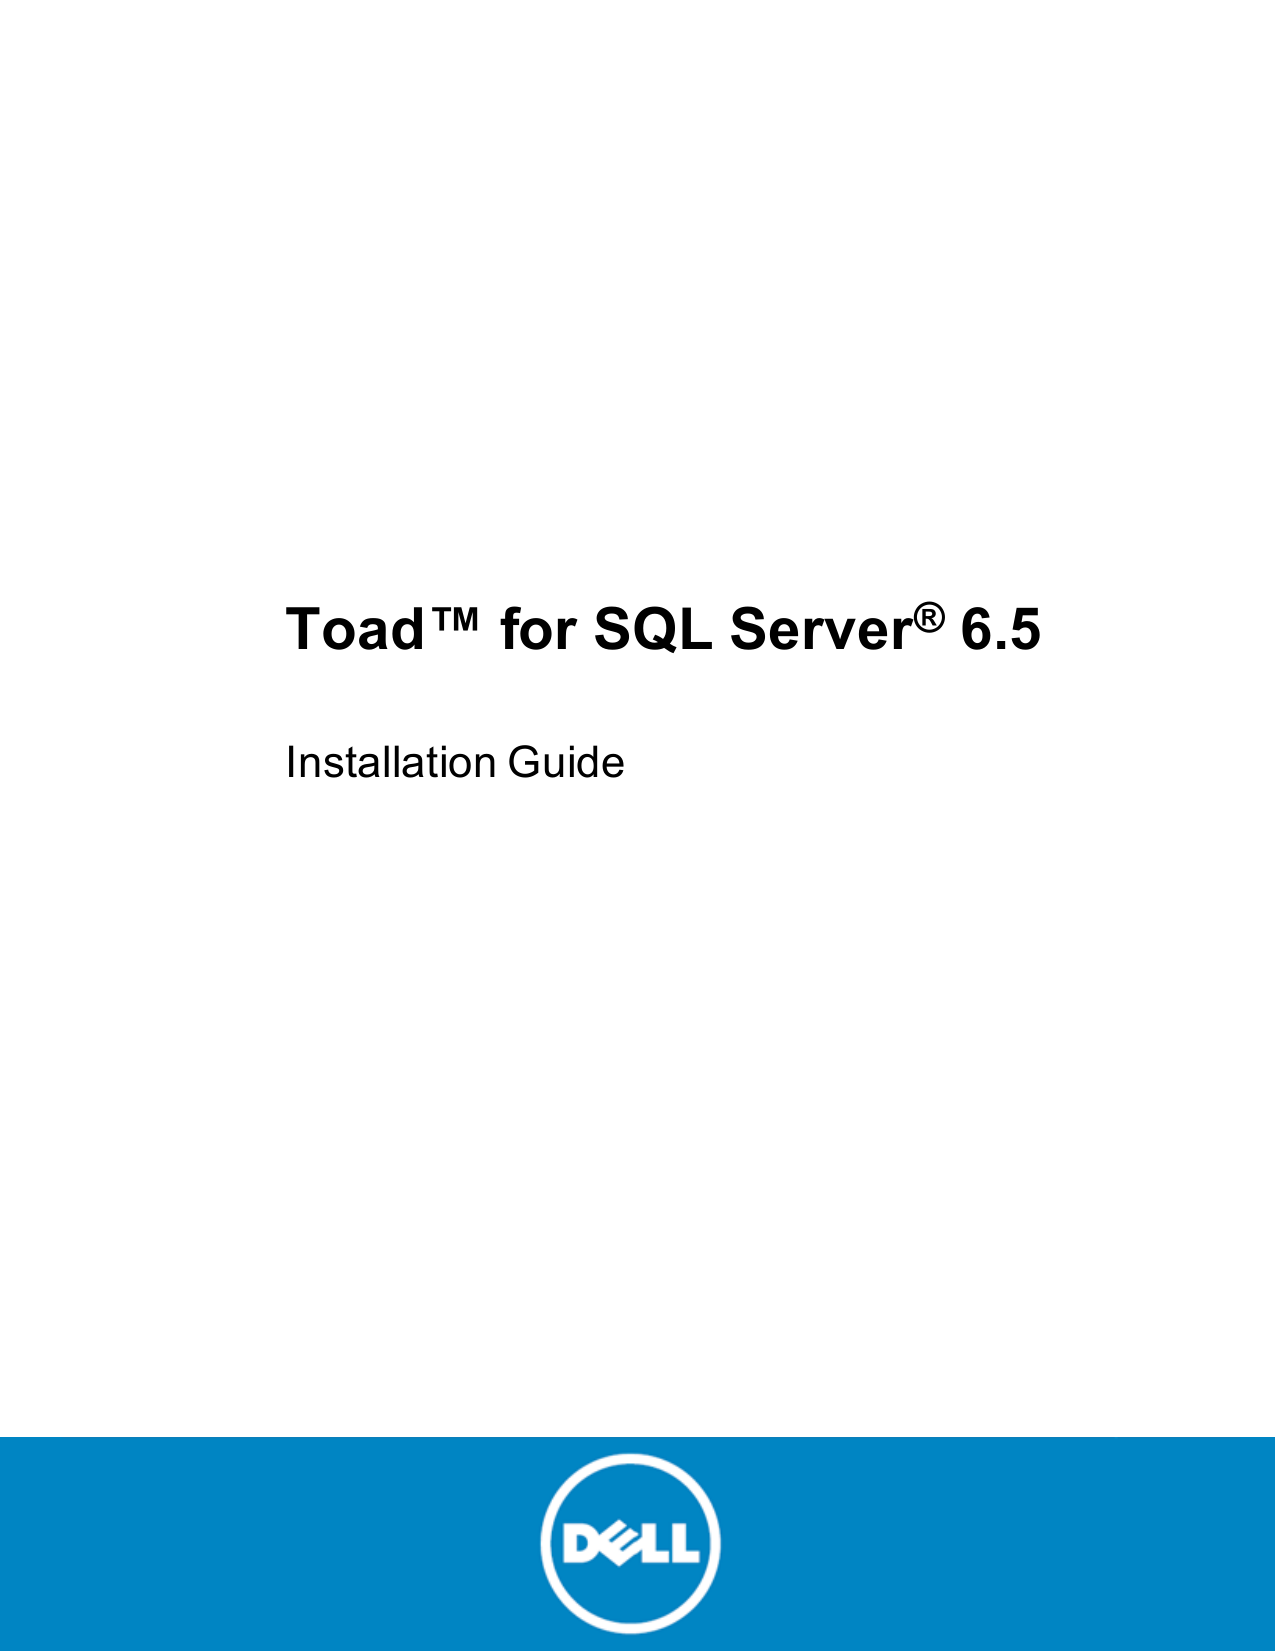 toad sql server parameter